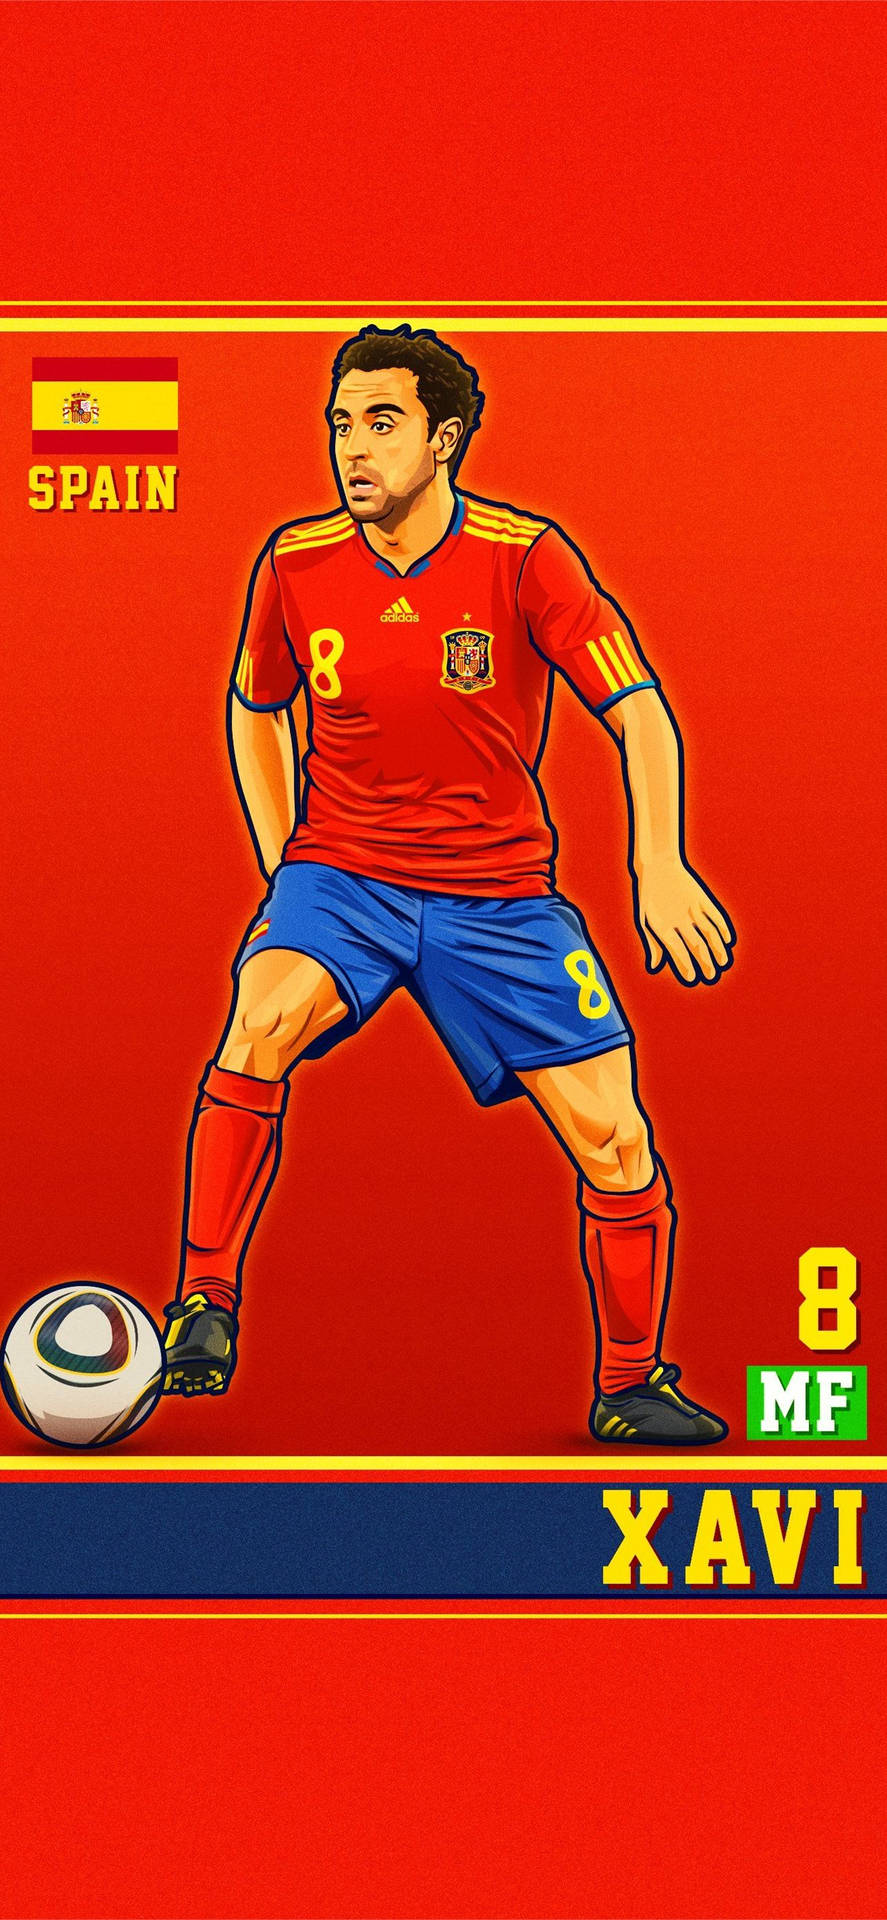 Spain National Football Team Xavi Digital Art Wallpaper